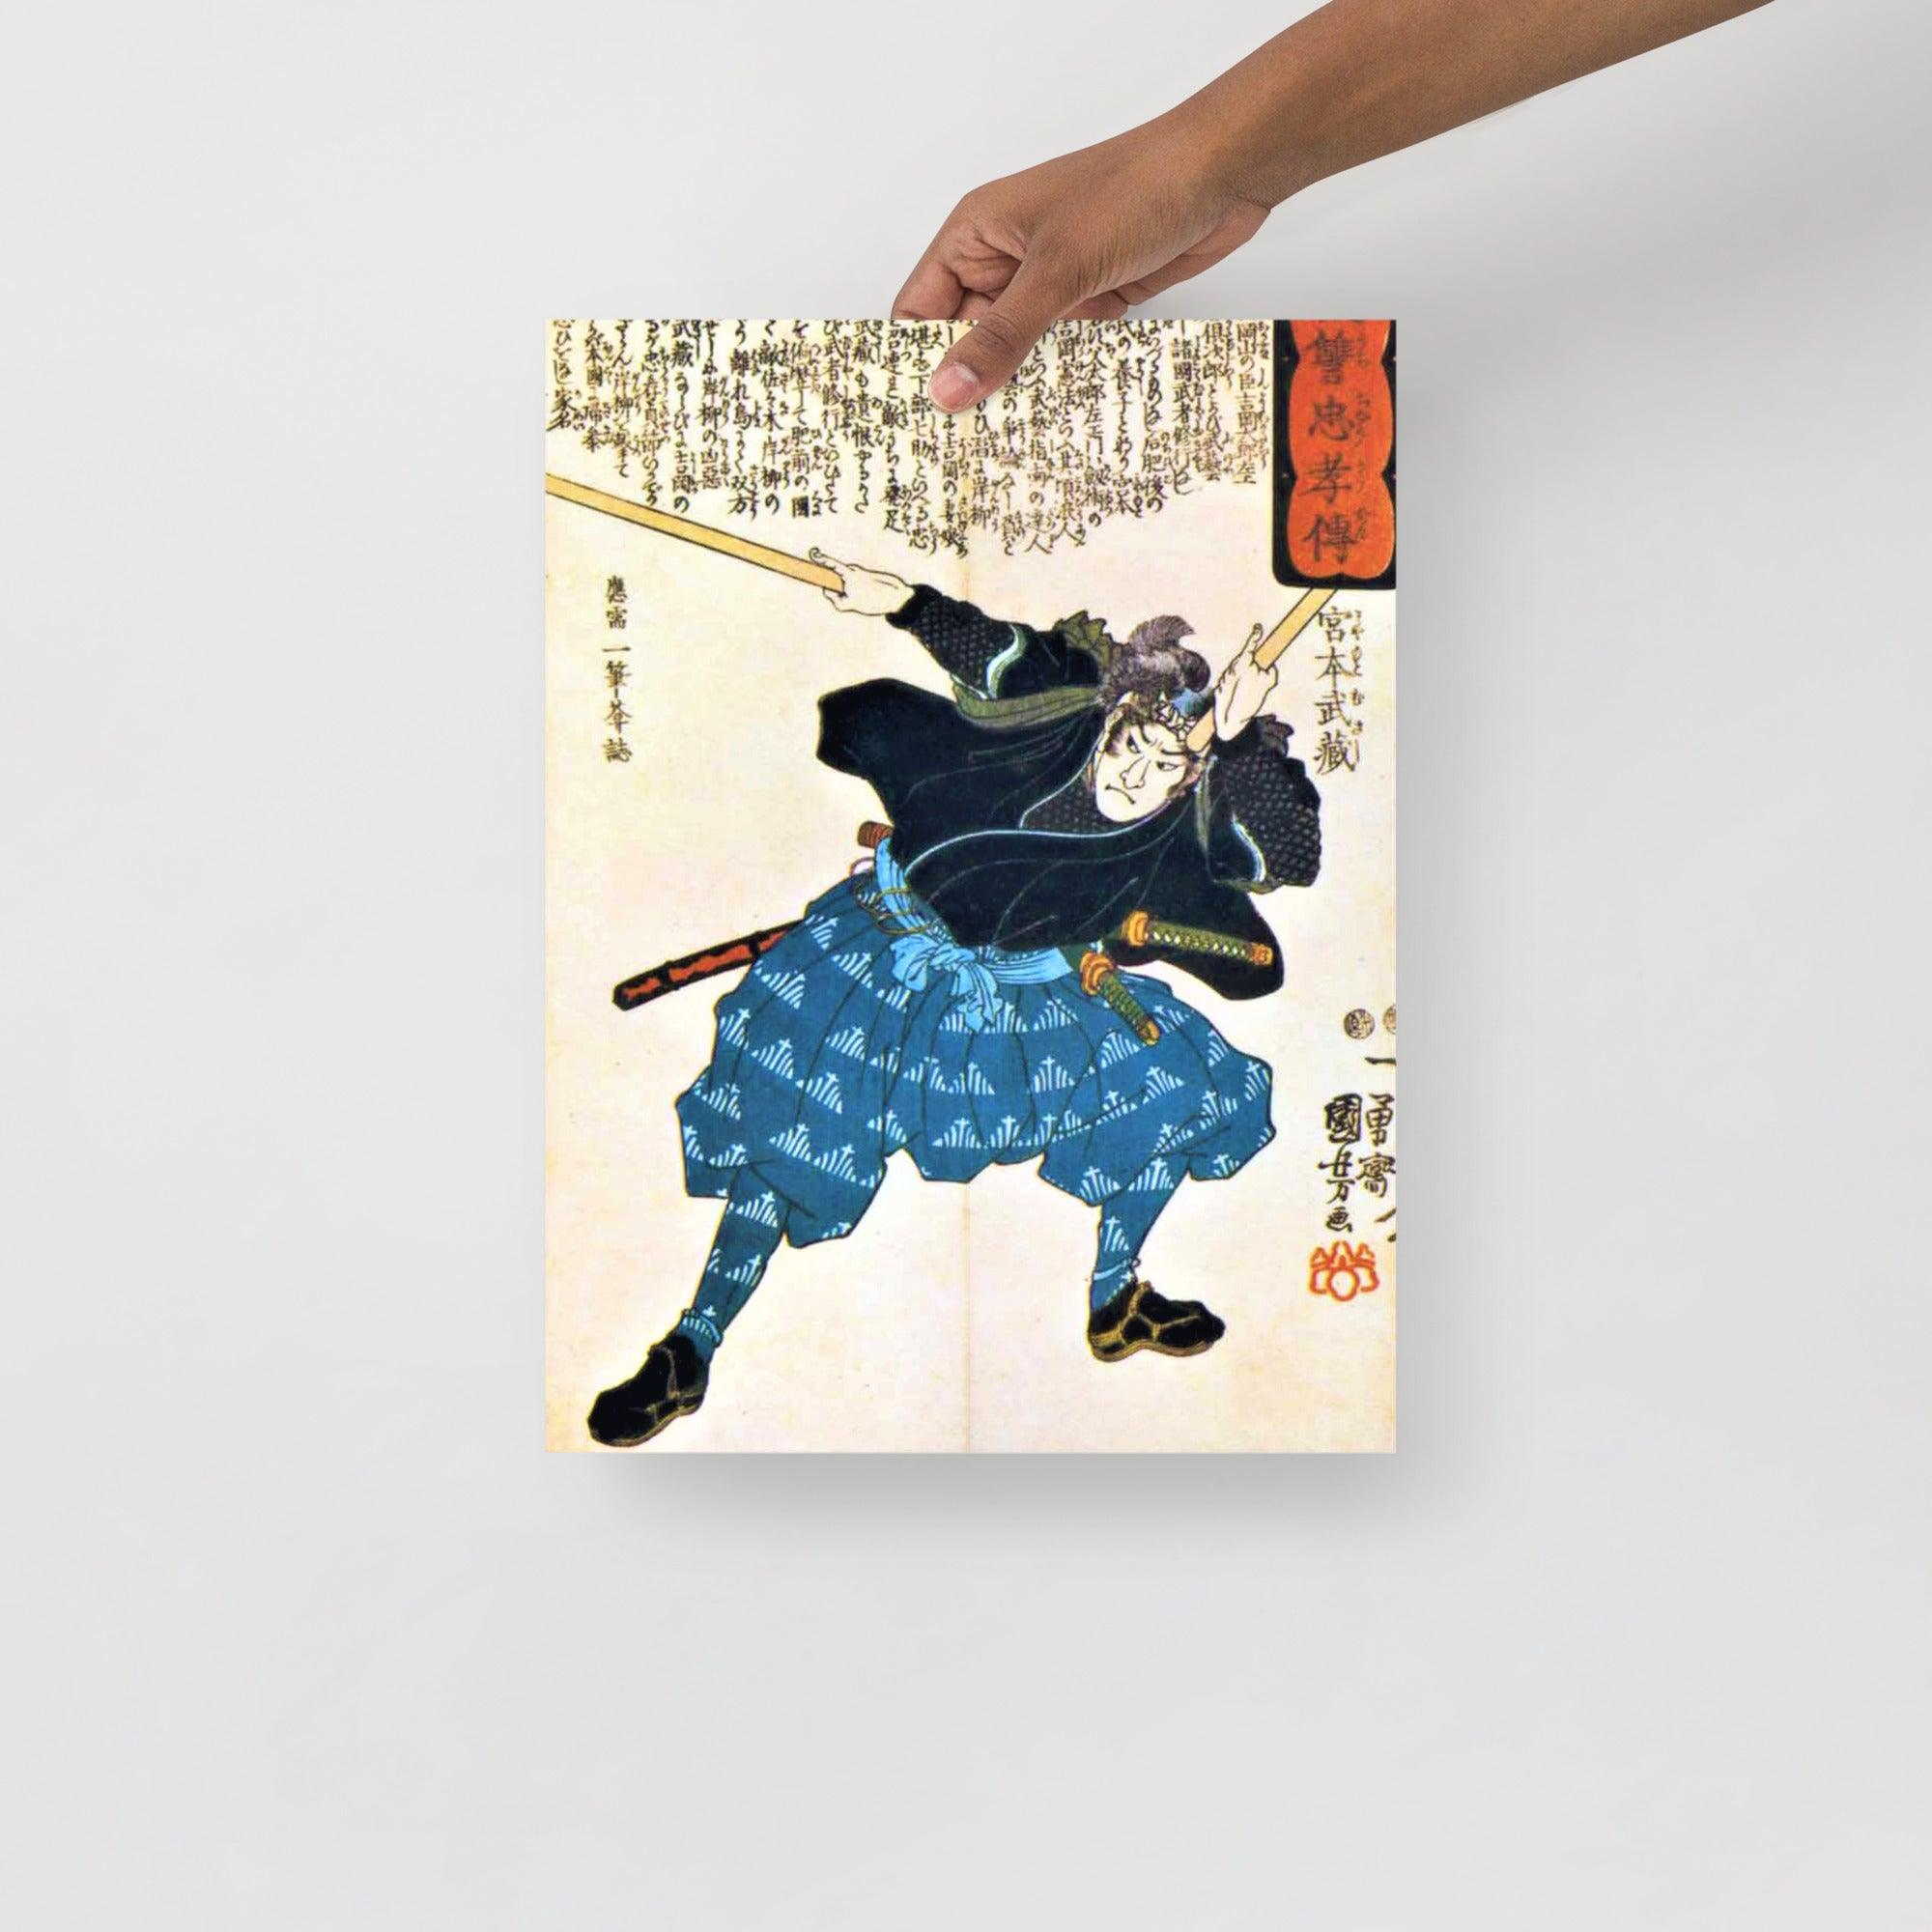 A Miyamoto Musashi by Utagawa Kuniyoshi poster on a plain backdrop in size 12x16”.